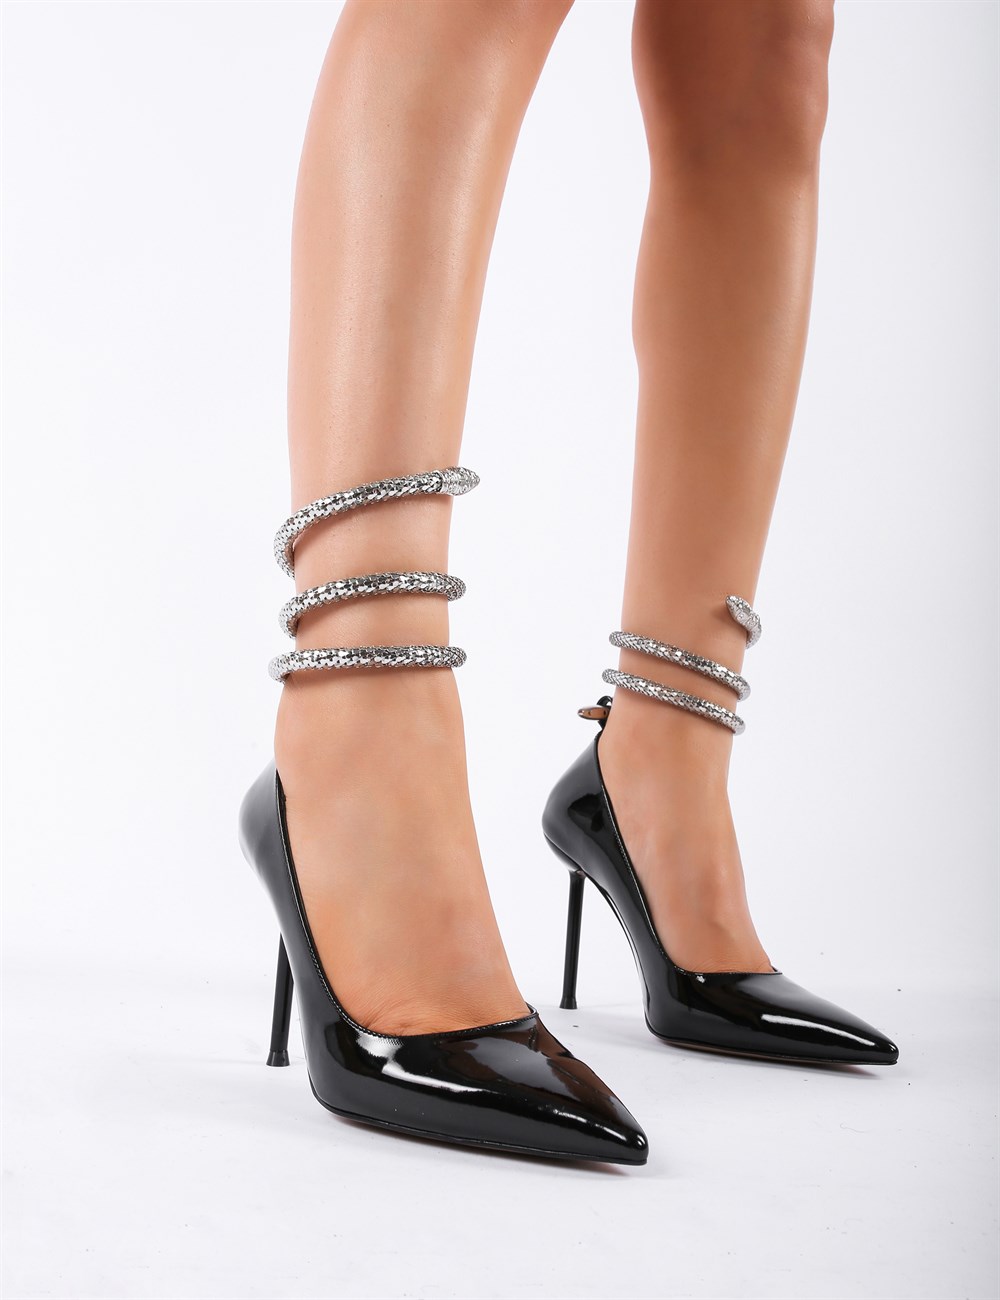 Zoltan Kristal Taşlı Ayakkabı Gümüş - Kadın Ayakkabı